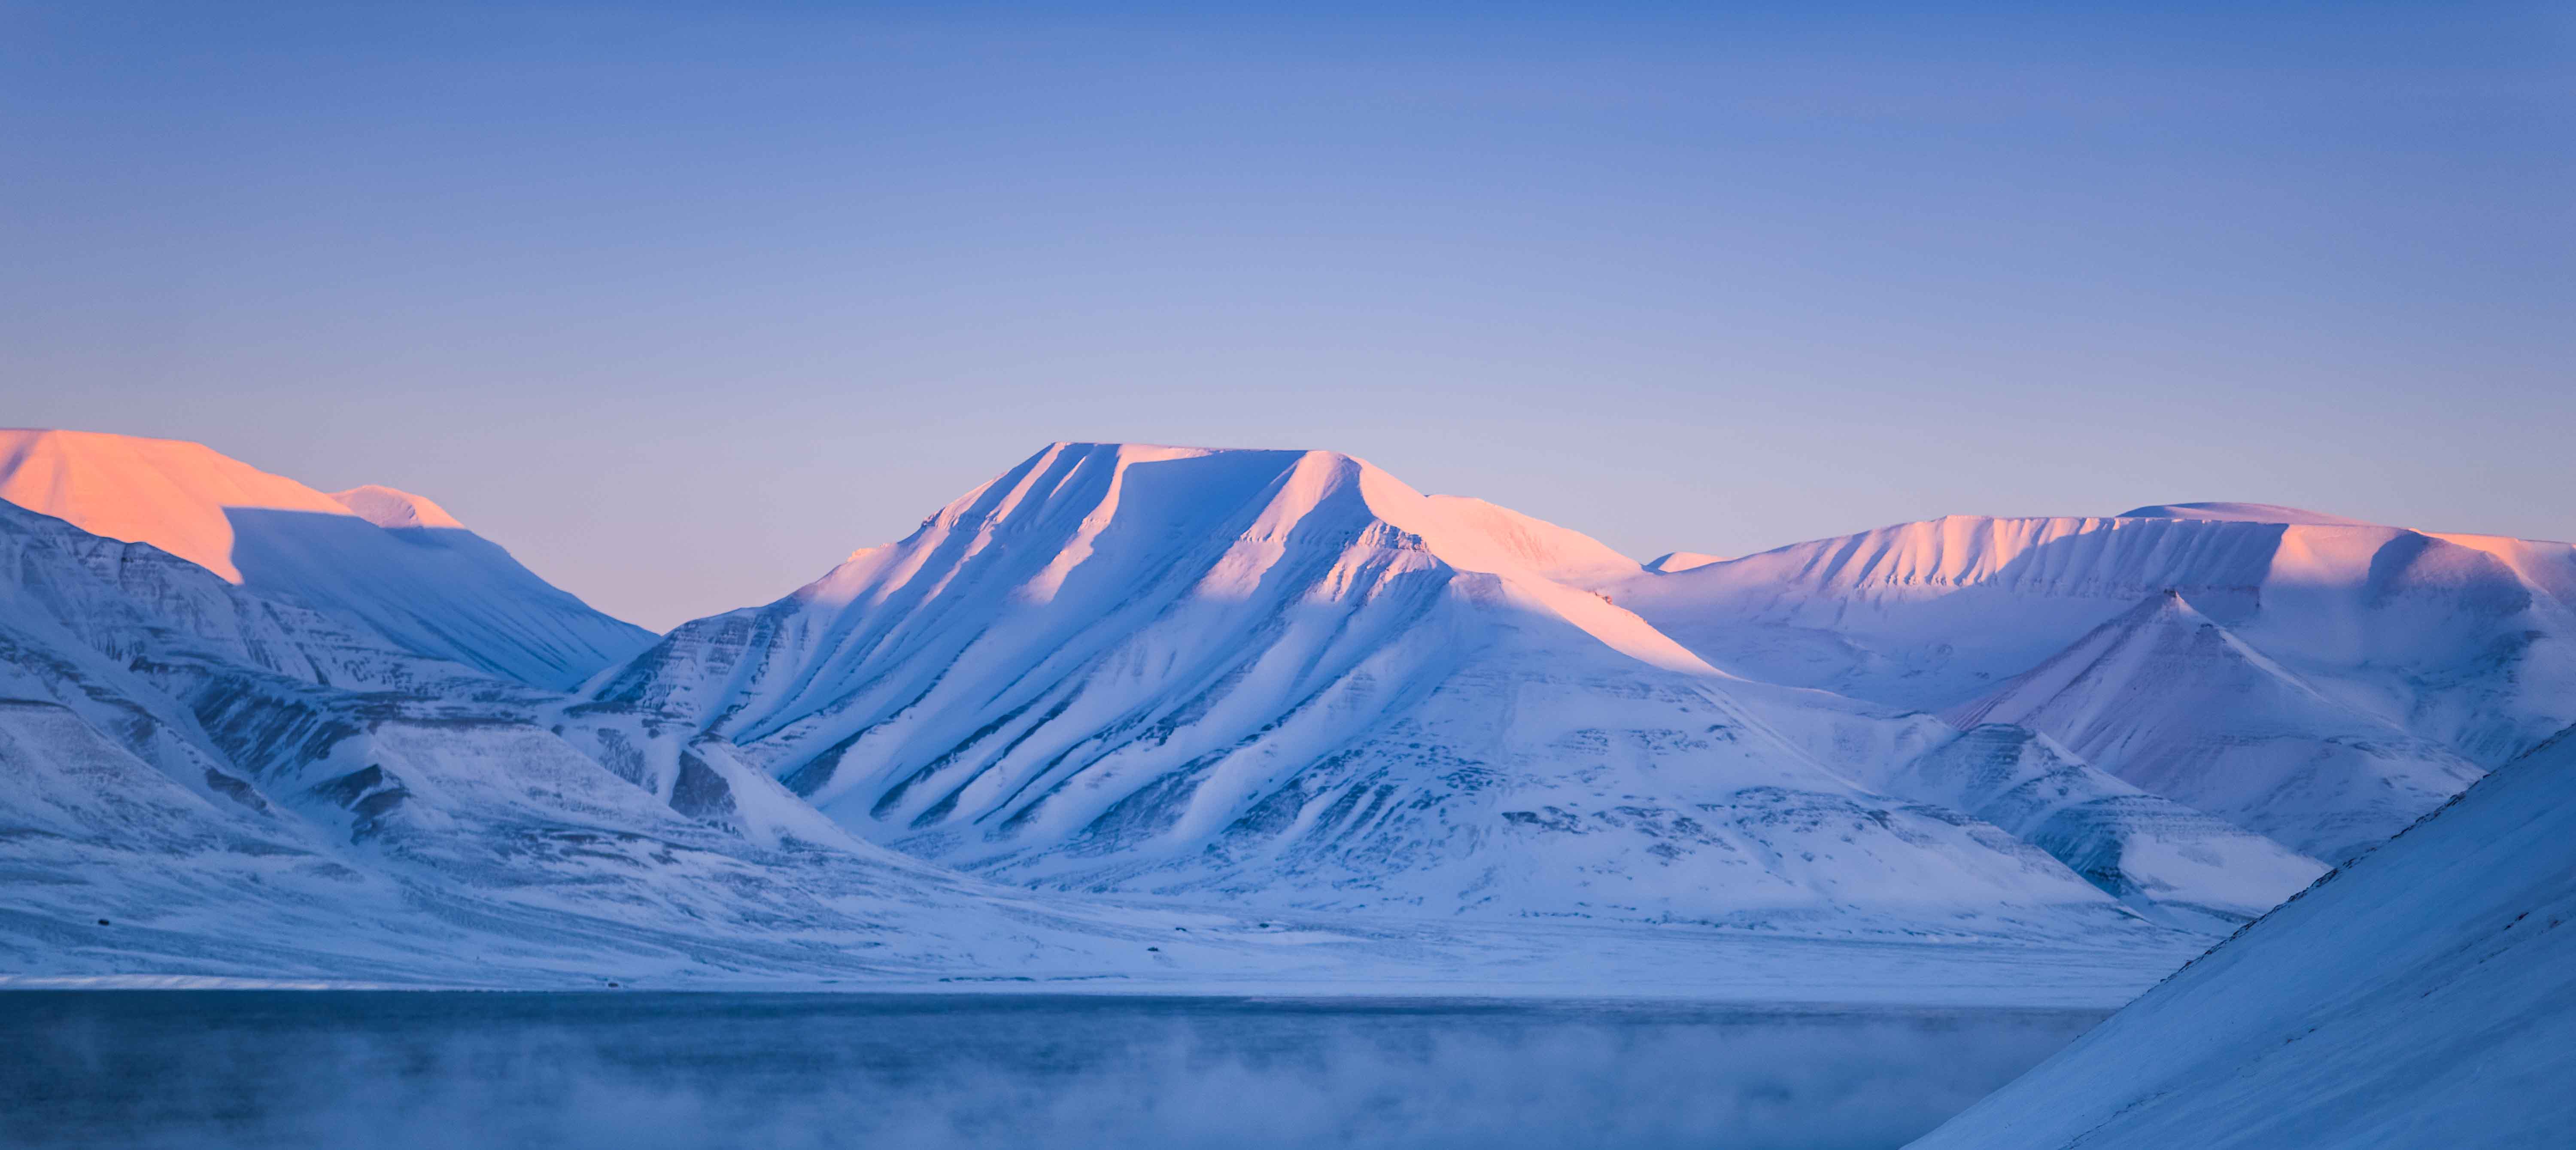 Det fortryllende og isklædte landskab i Svalbard, Norge